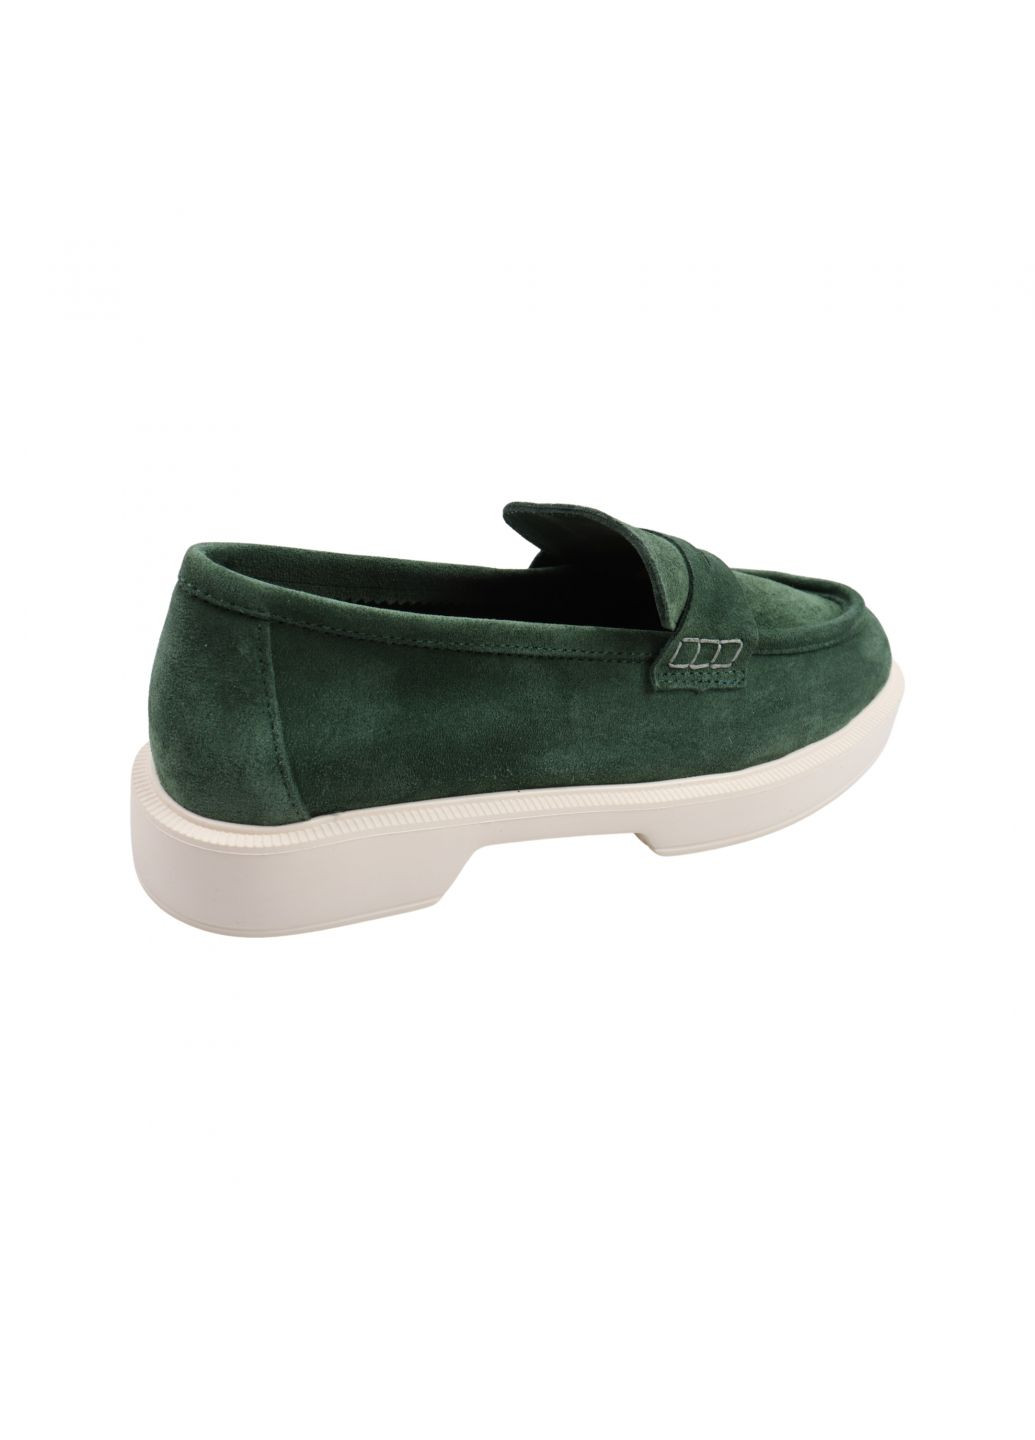 Туфли женские зеленые натуральная замша Tucino